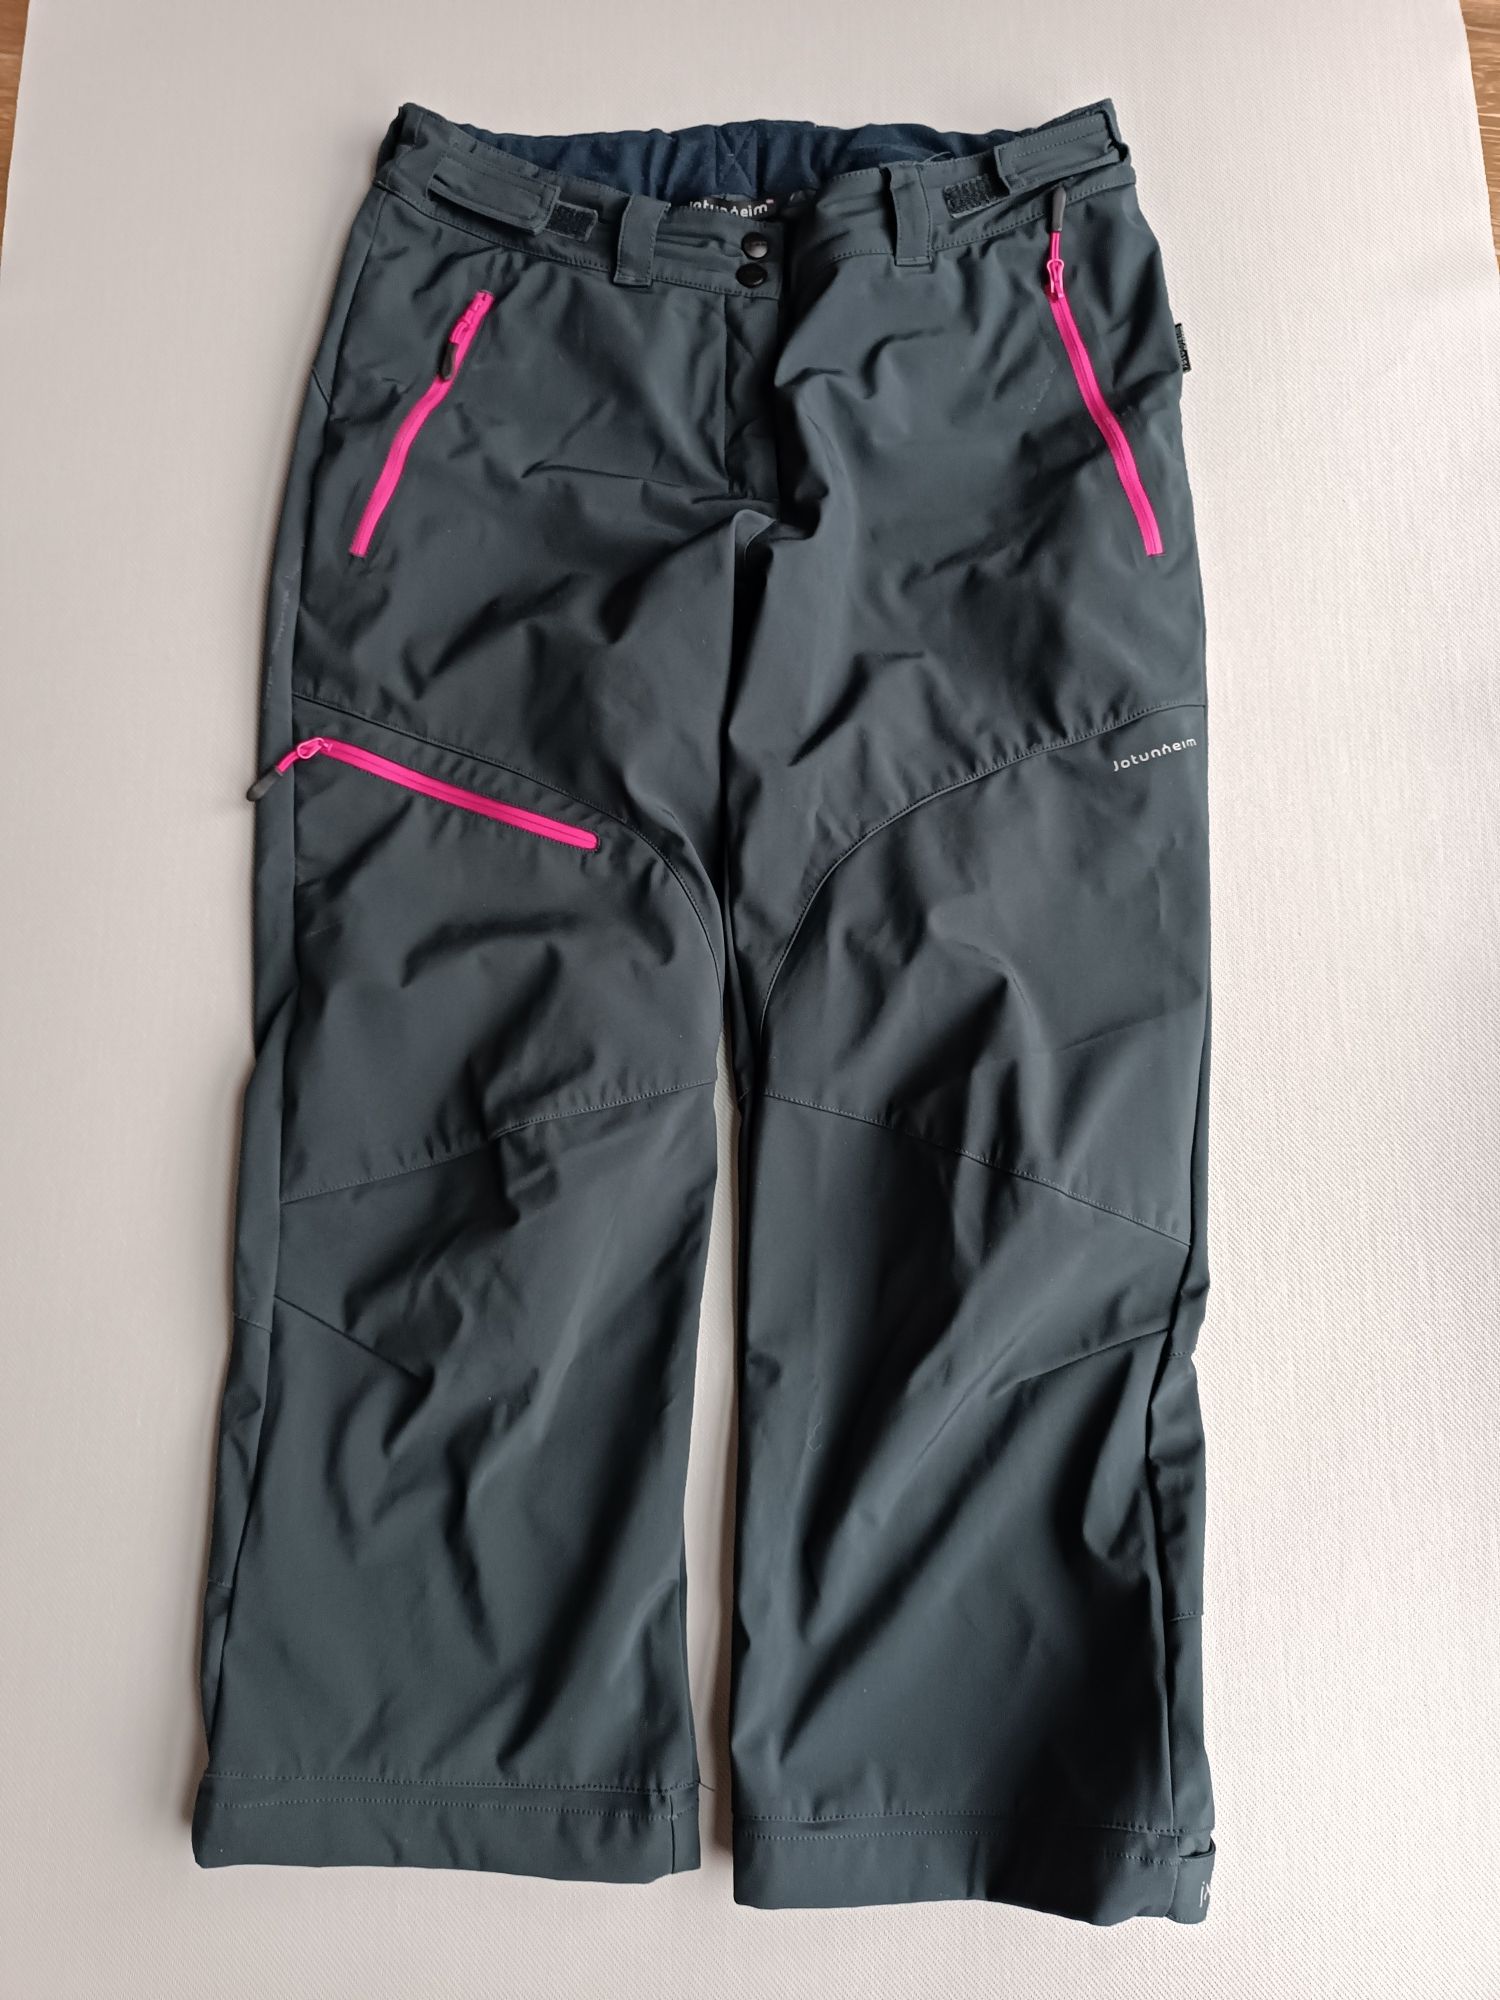 Jotunheim spodnie trekkingowe granatowe rozmiar 44 damskie krótsze